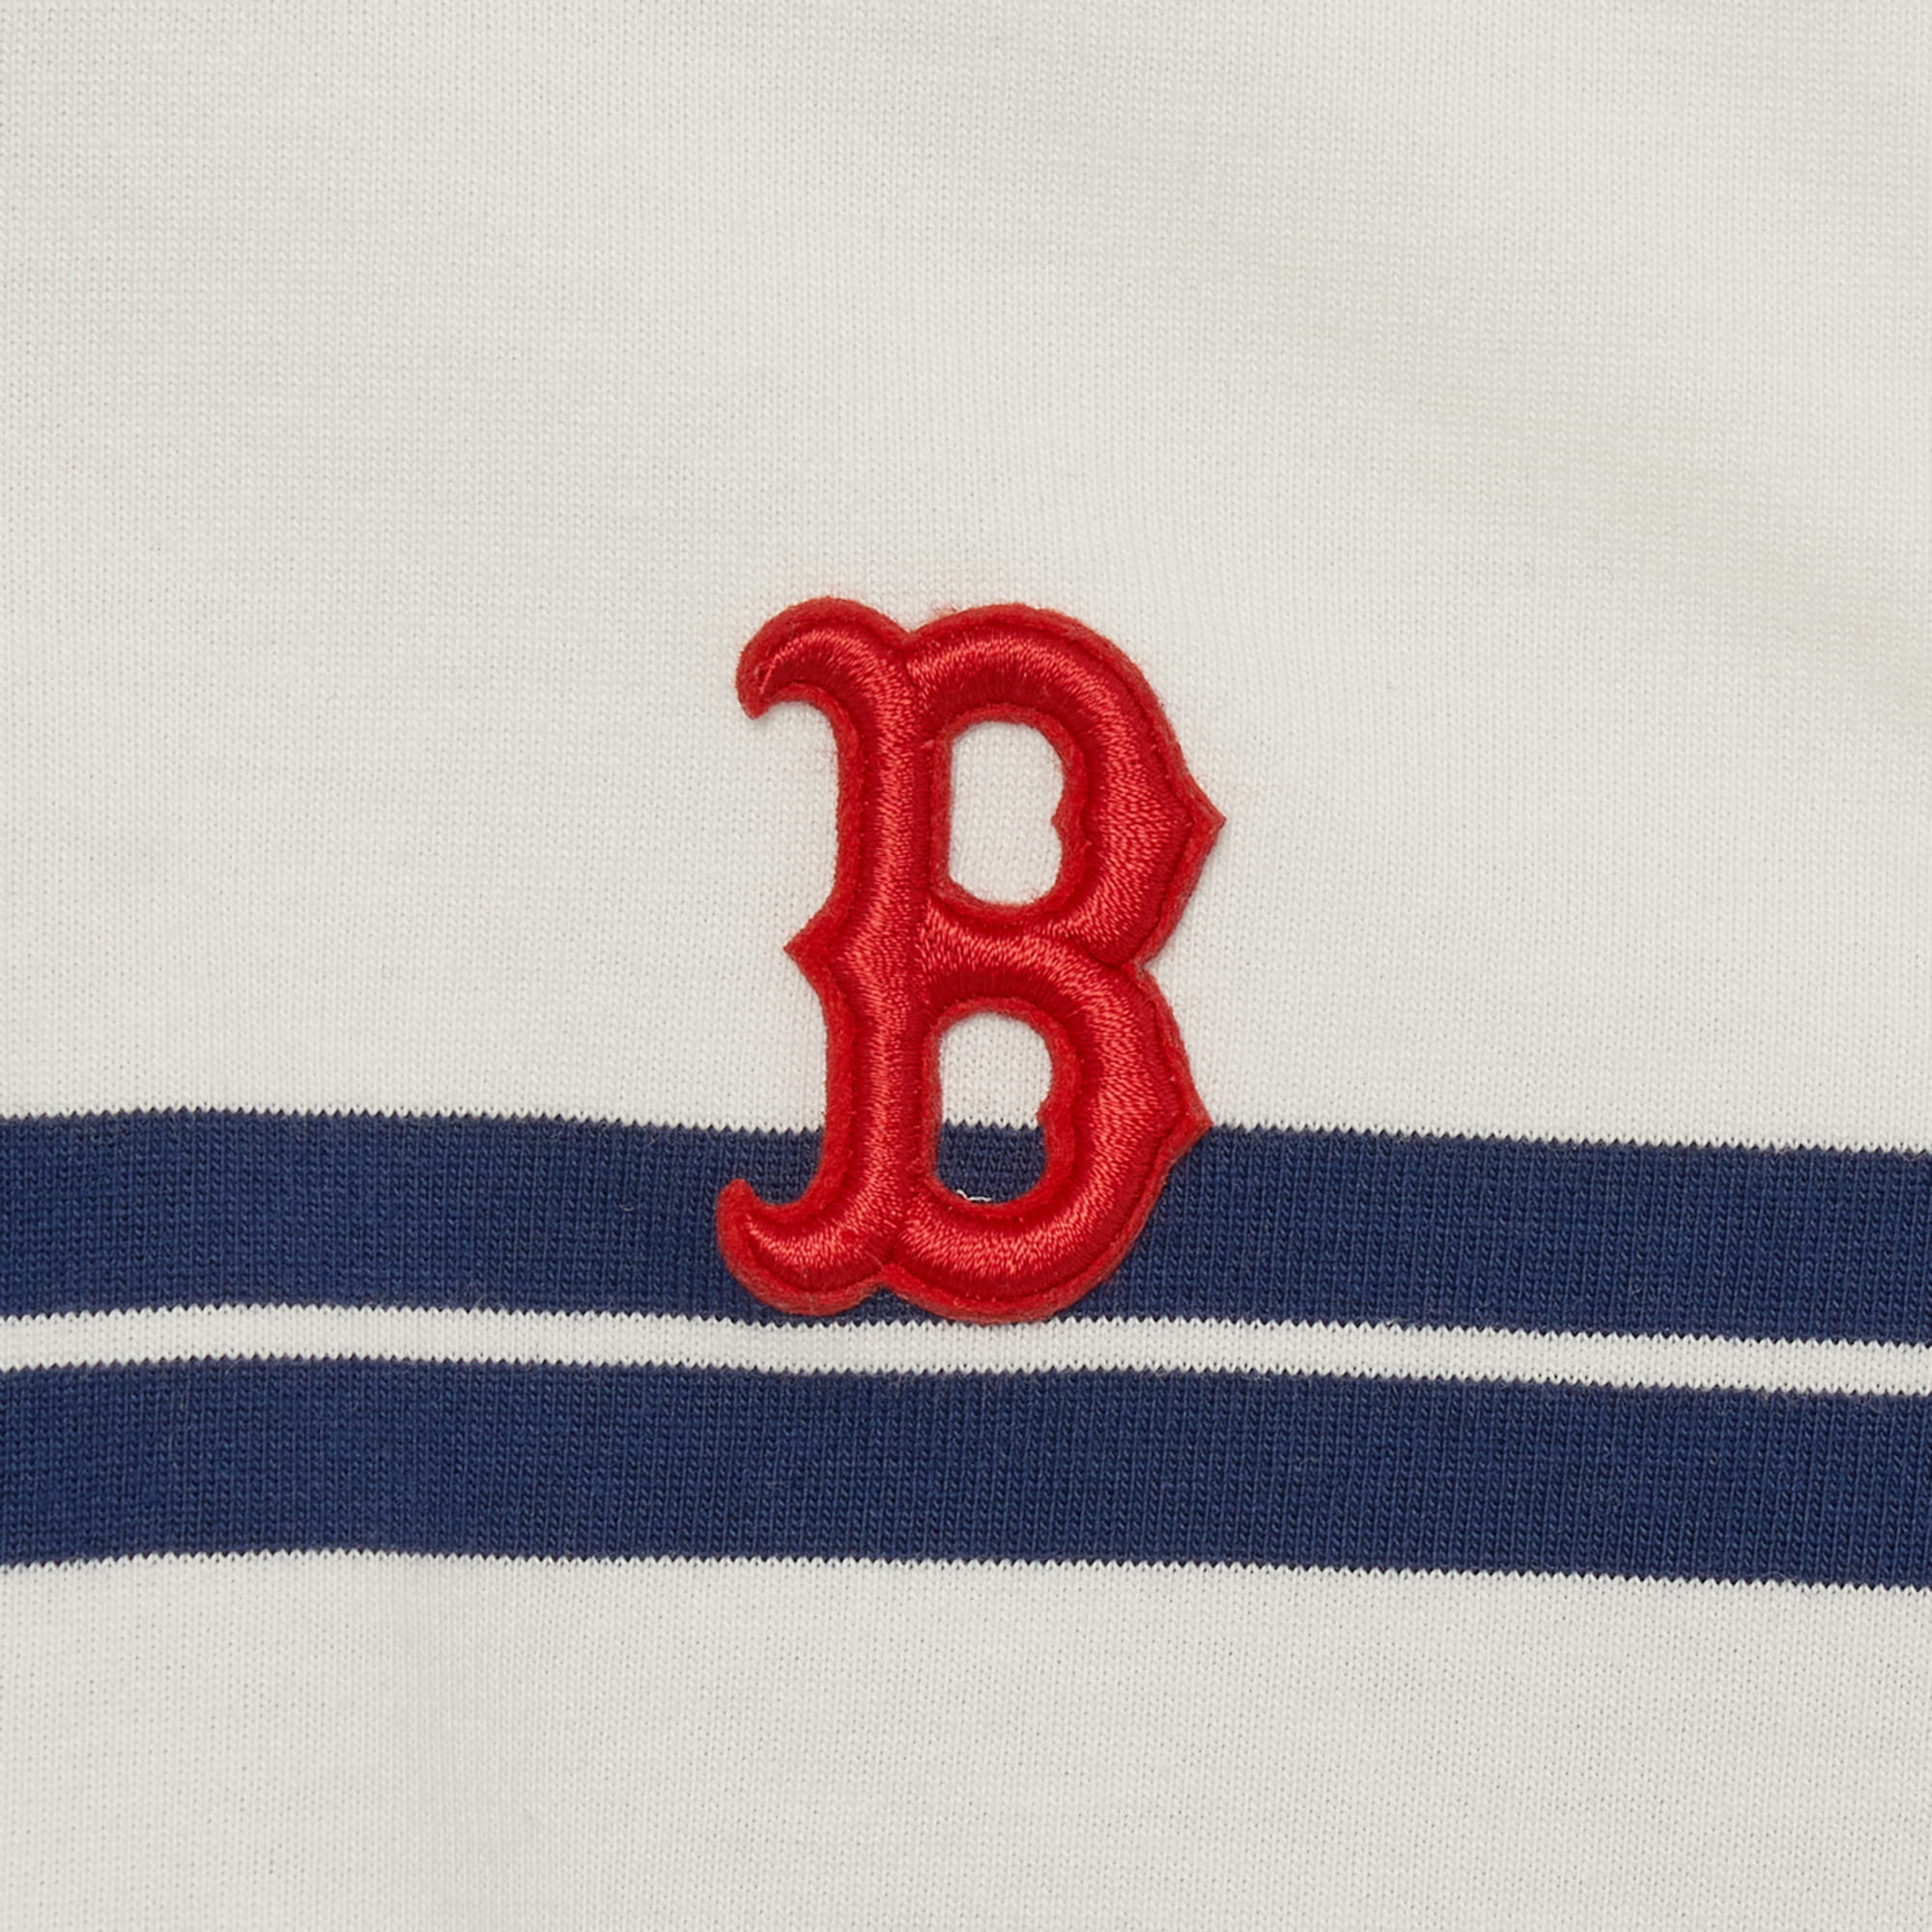 ÁO THUN NỮ POLO MÀU TRẮNG PHỐI XANH MLB B VARSITY STRIPED CROP COLLAR T-SHIRT BOSTON RED SOX 3FPQV0133-43IVS MÀU TRẮNG SỌC XANH NAVY 18